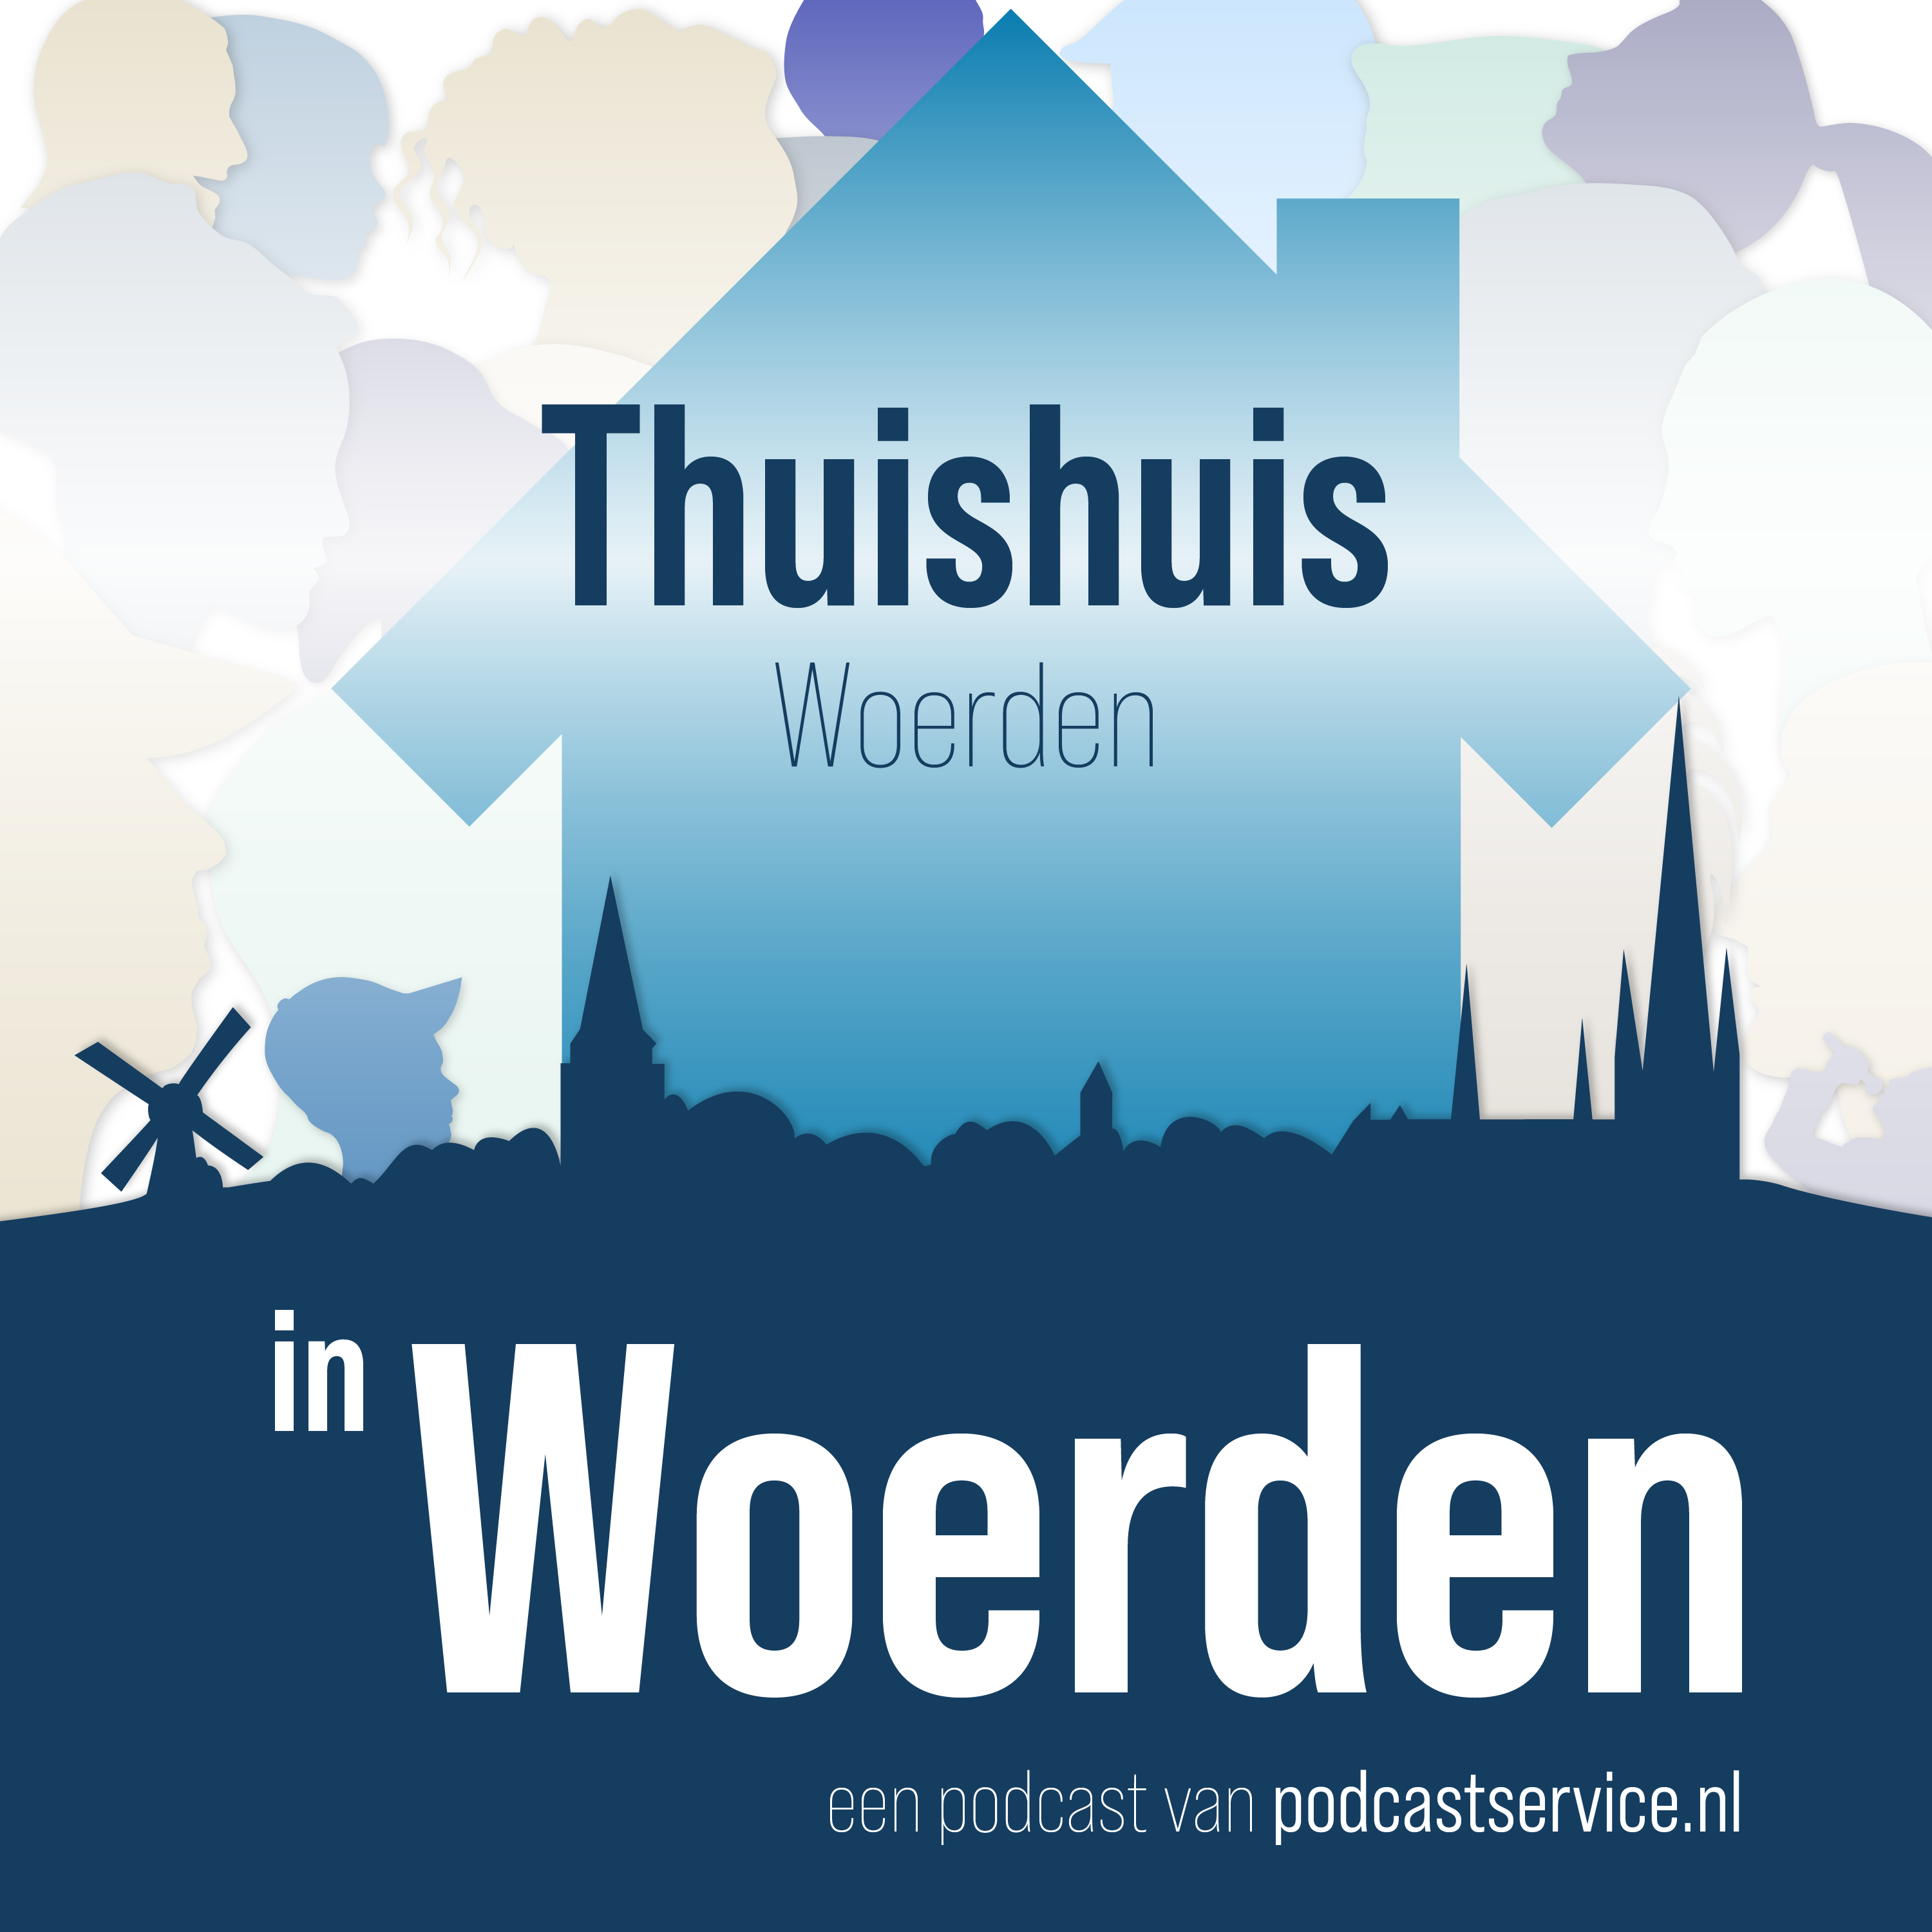 Thuishuis Woerden